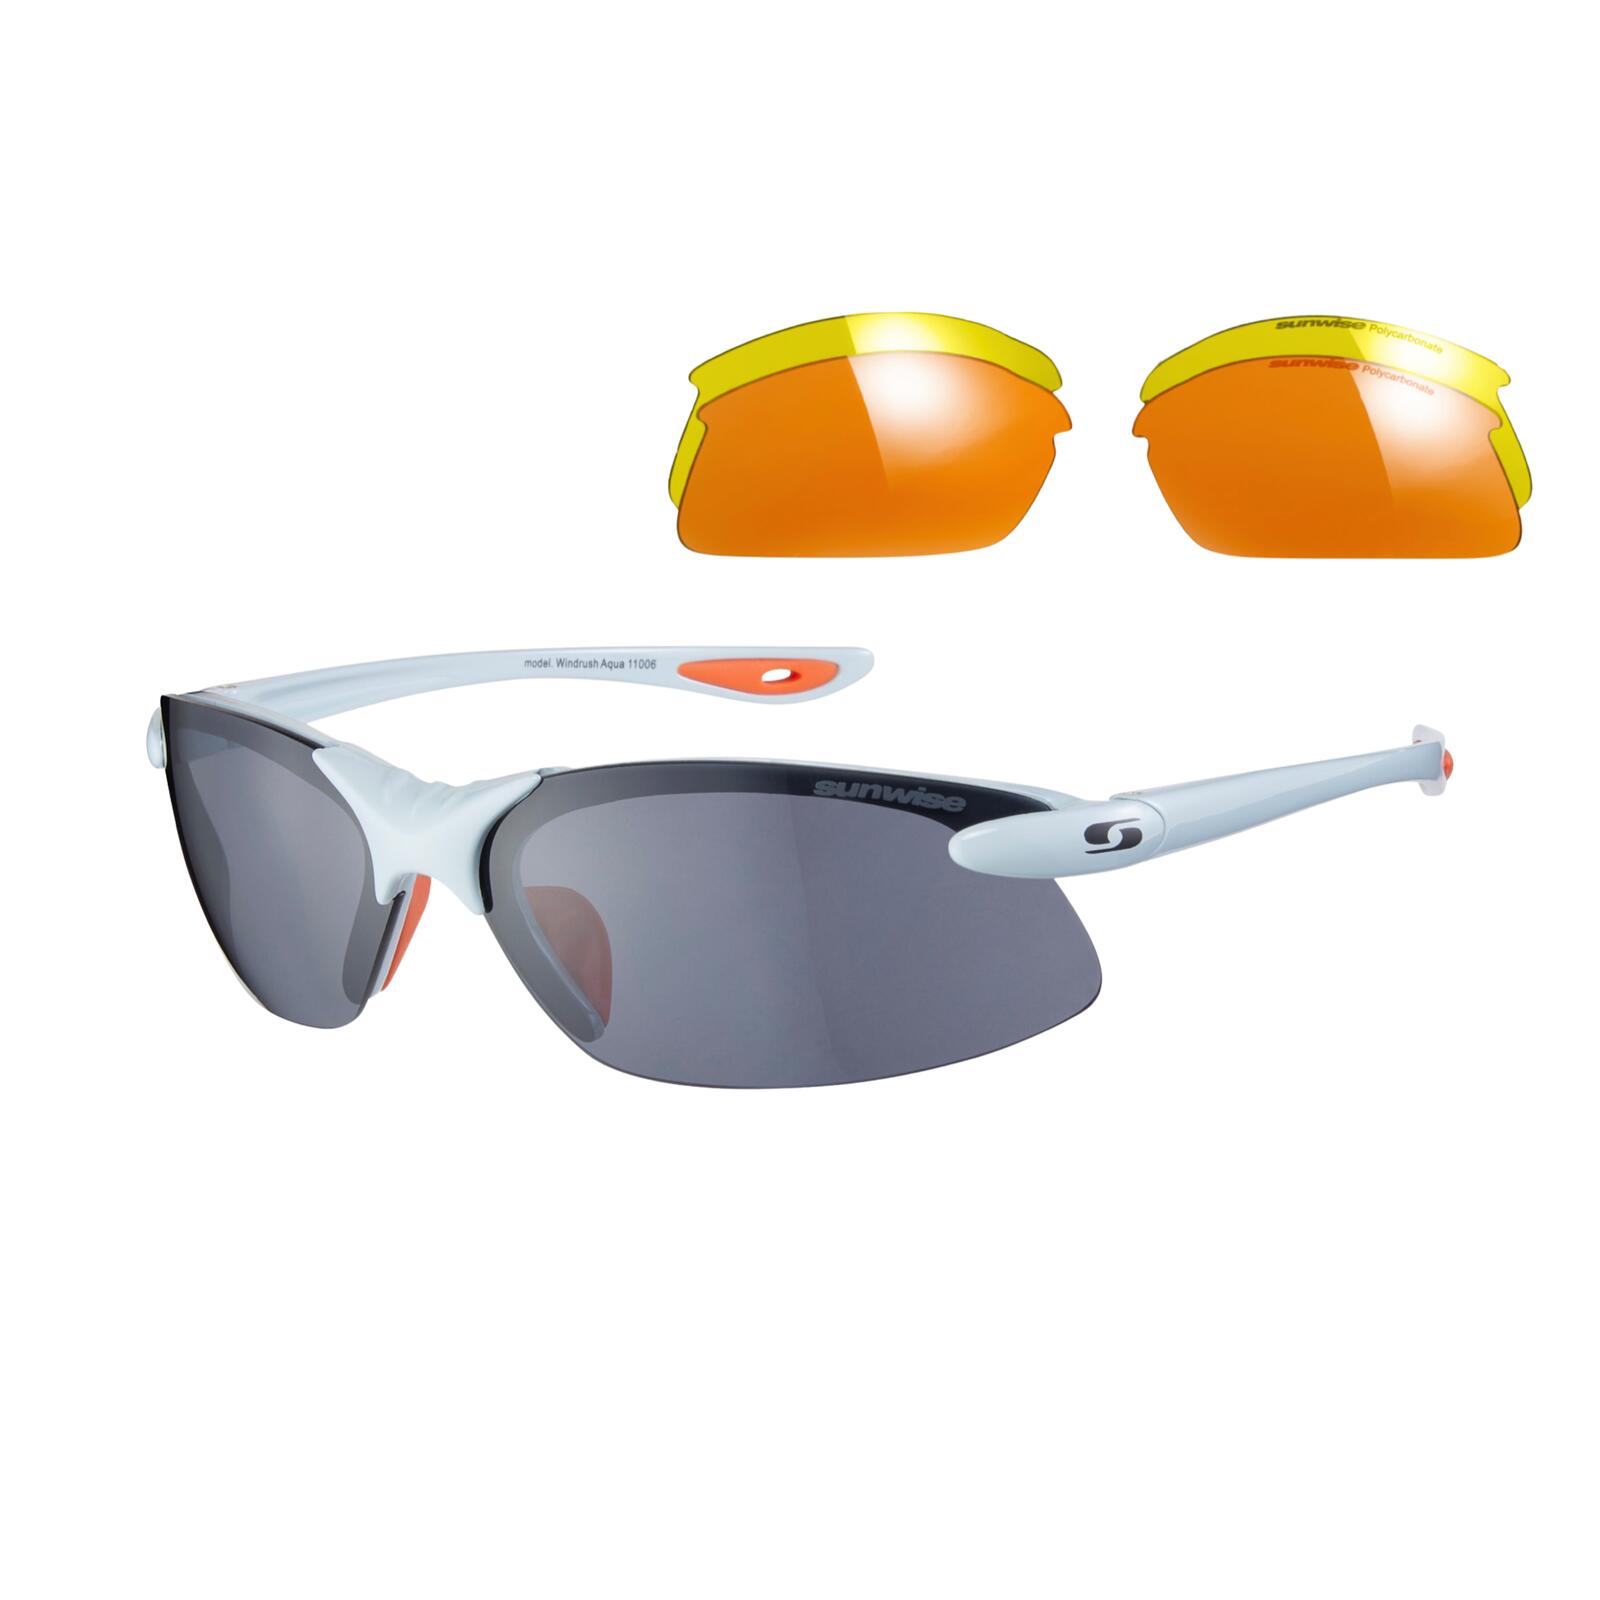 SUNWISE Windrush Sports Sunglasses - Category 1-3